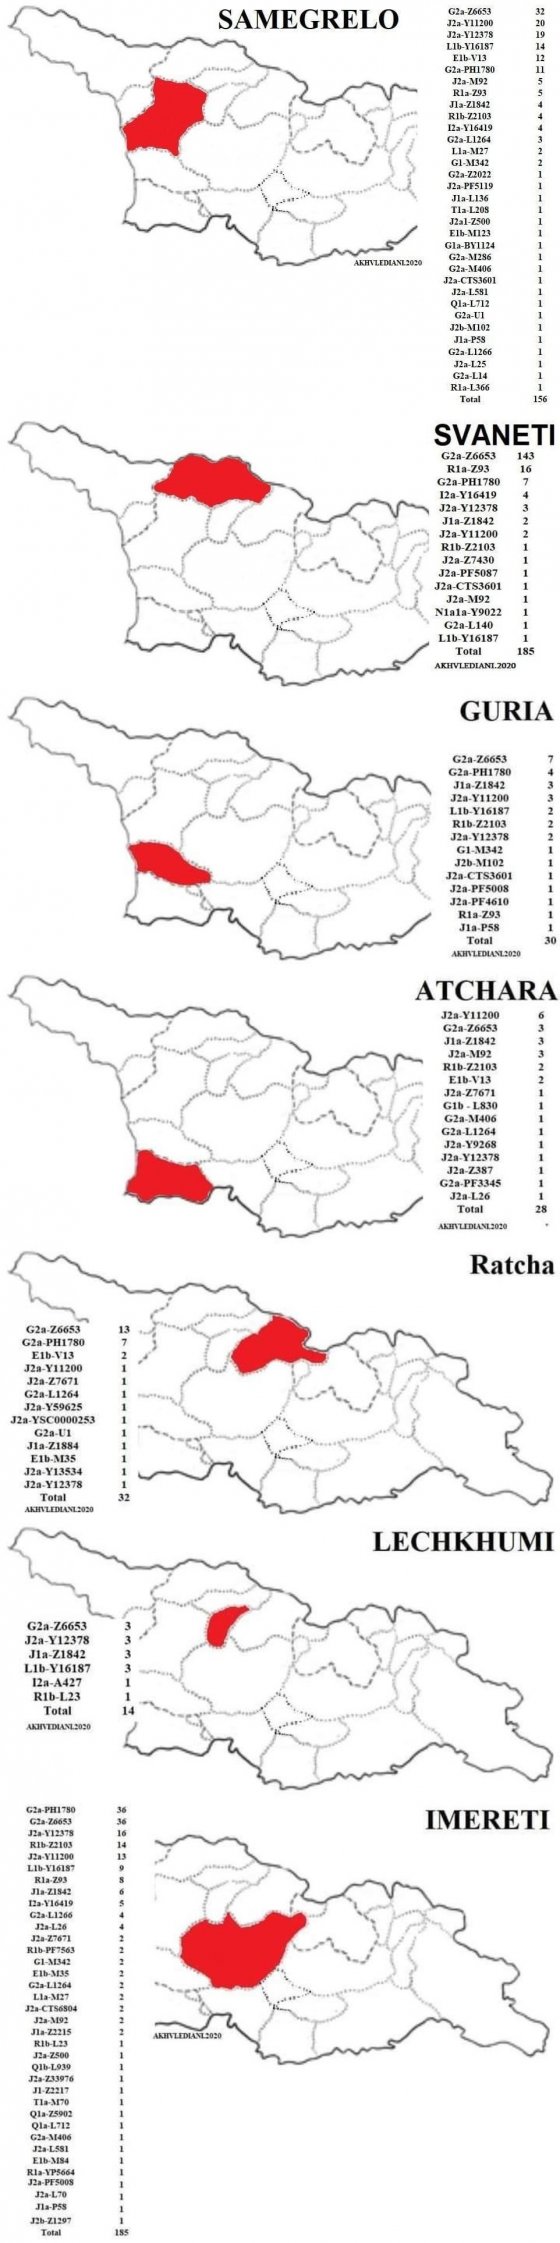 დასავლეთ ქართული გვარების ჰაპლოჯგუფები / Haplogroups of the Western Georgian Surnames